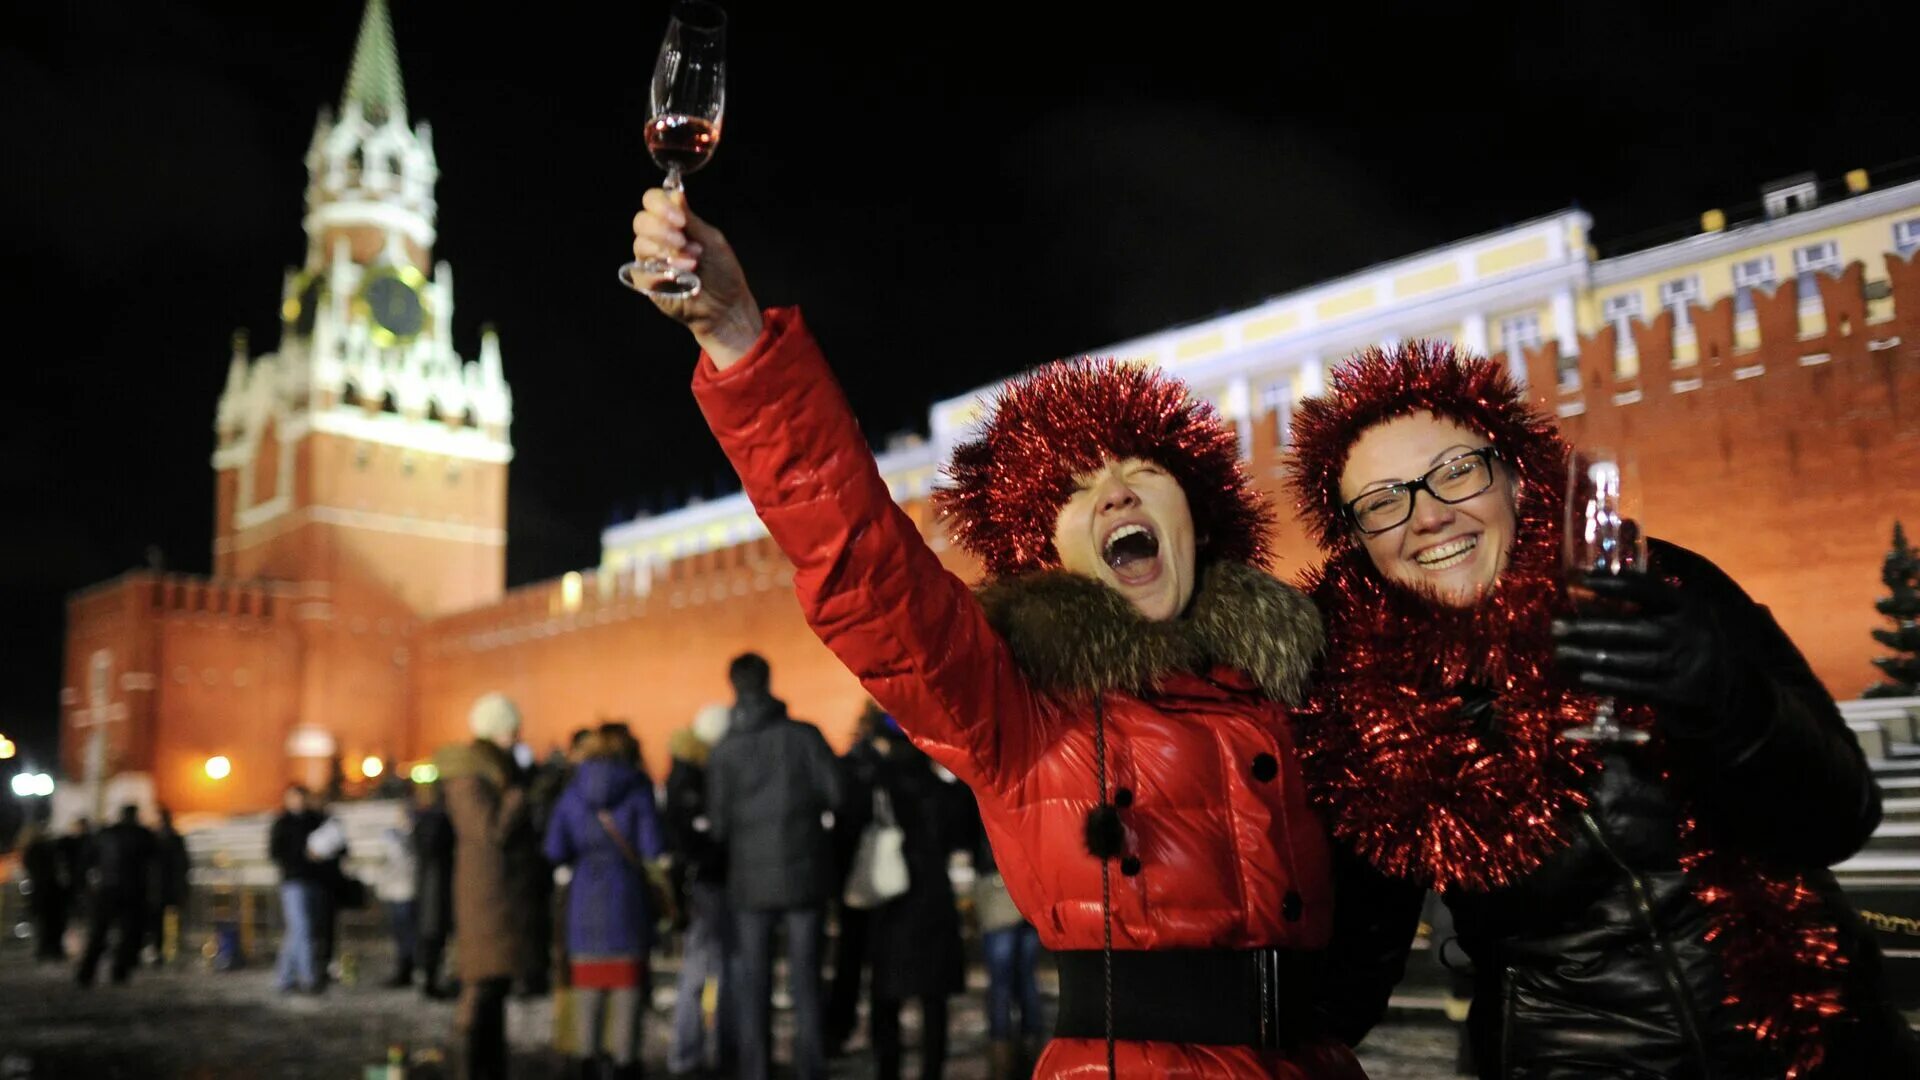 Красная площадь новый год. Люди на красной площади в новый год. Празднование нового года в России на красной площади. Красная площадь в новогоднюю ночь. В 2017 году отметит